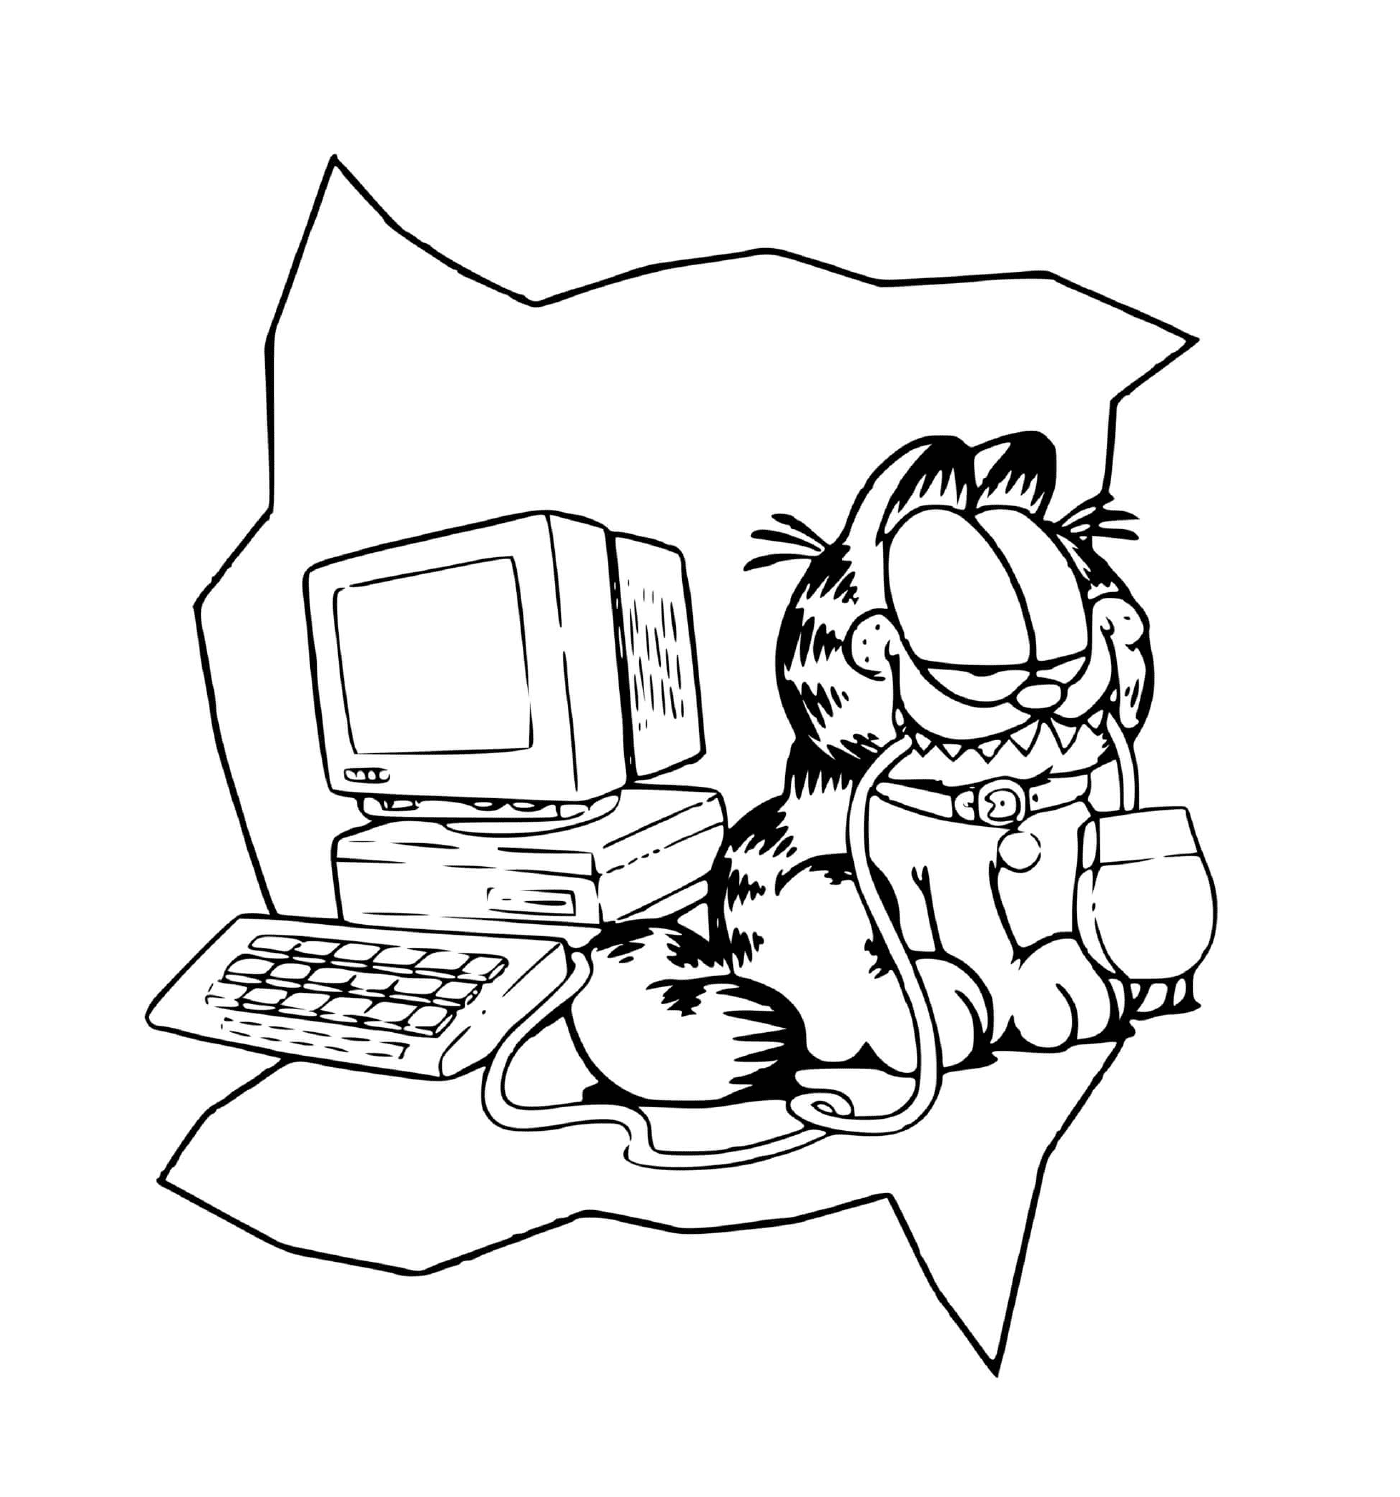  A Garfield piace giocare con un computer 